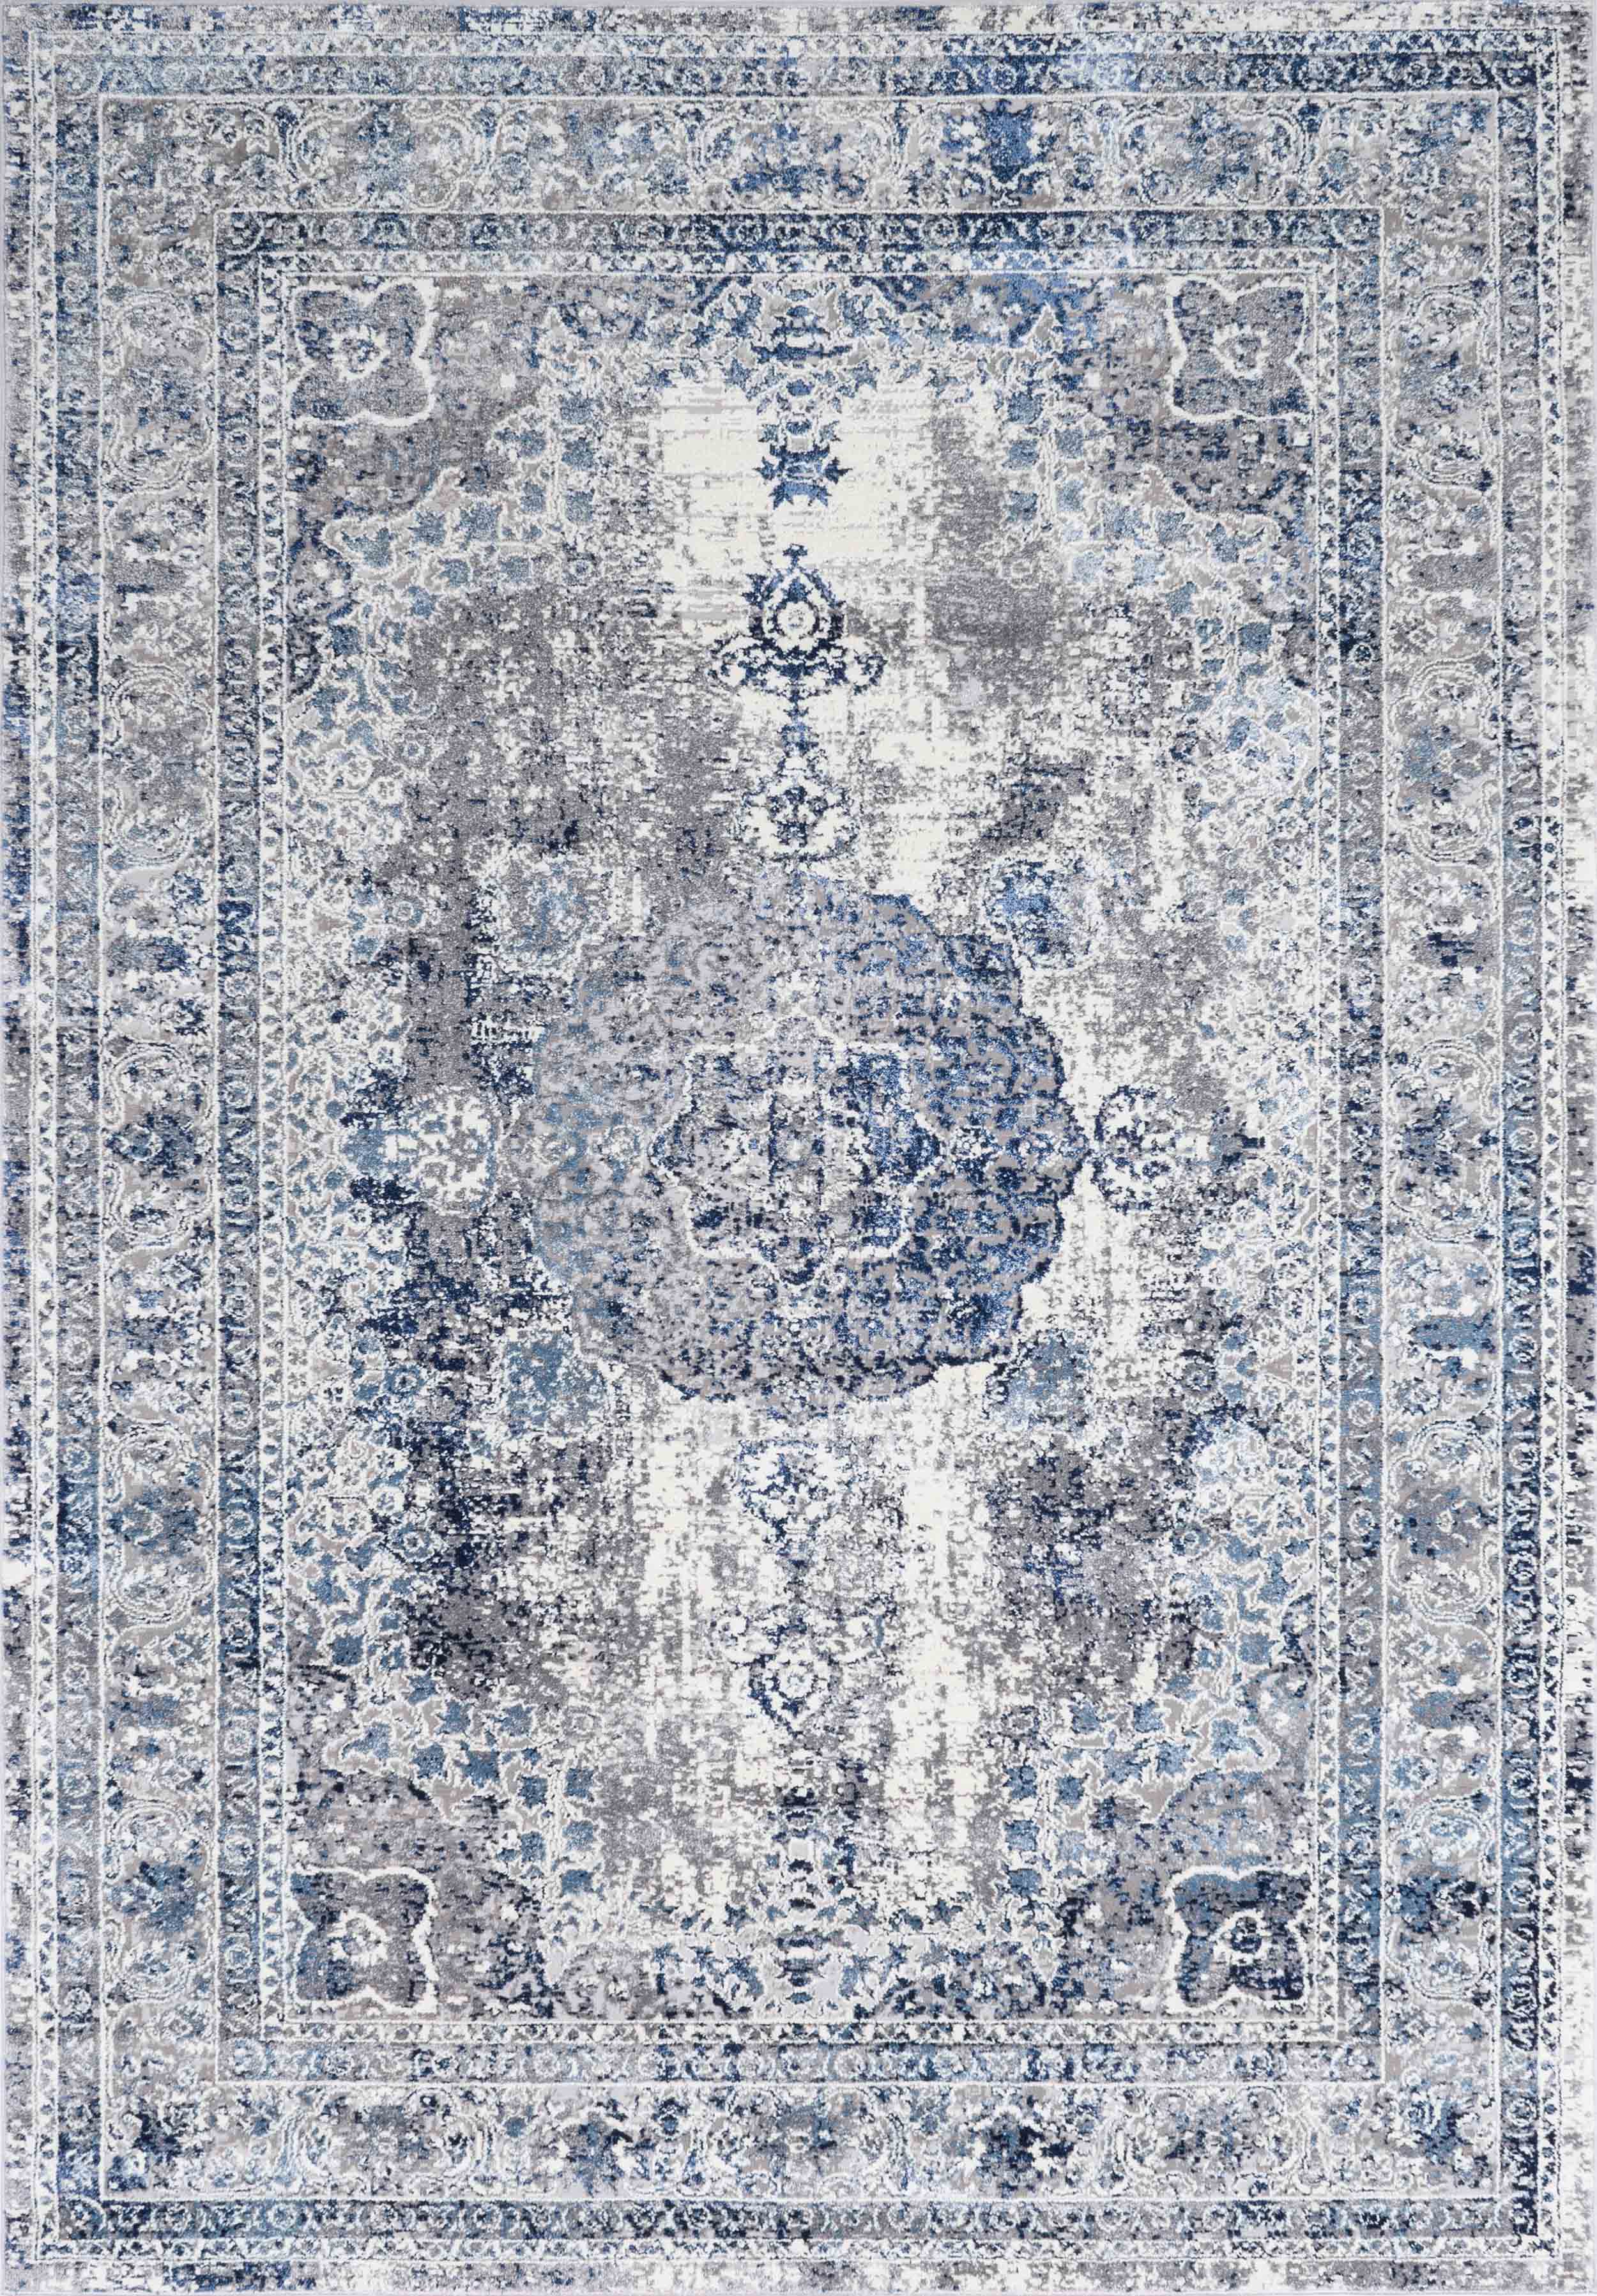 Tapis vintage motif baroque bleu - 160x230